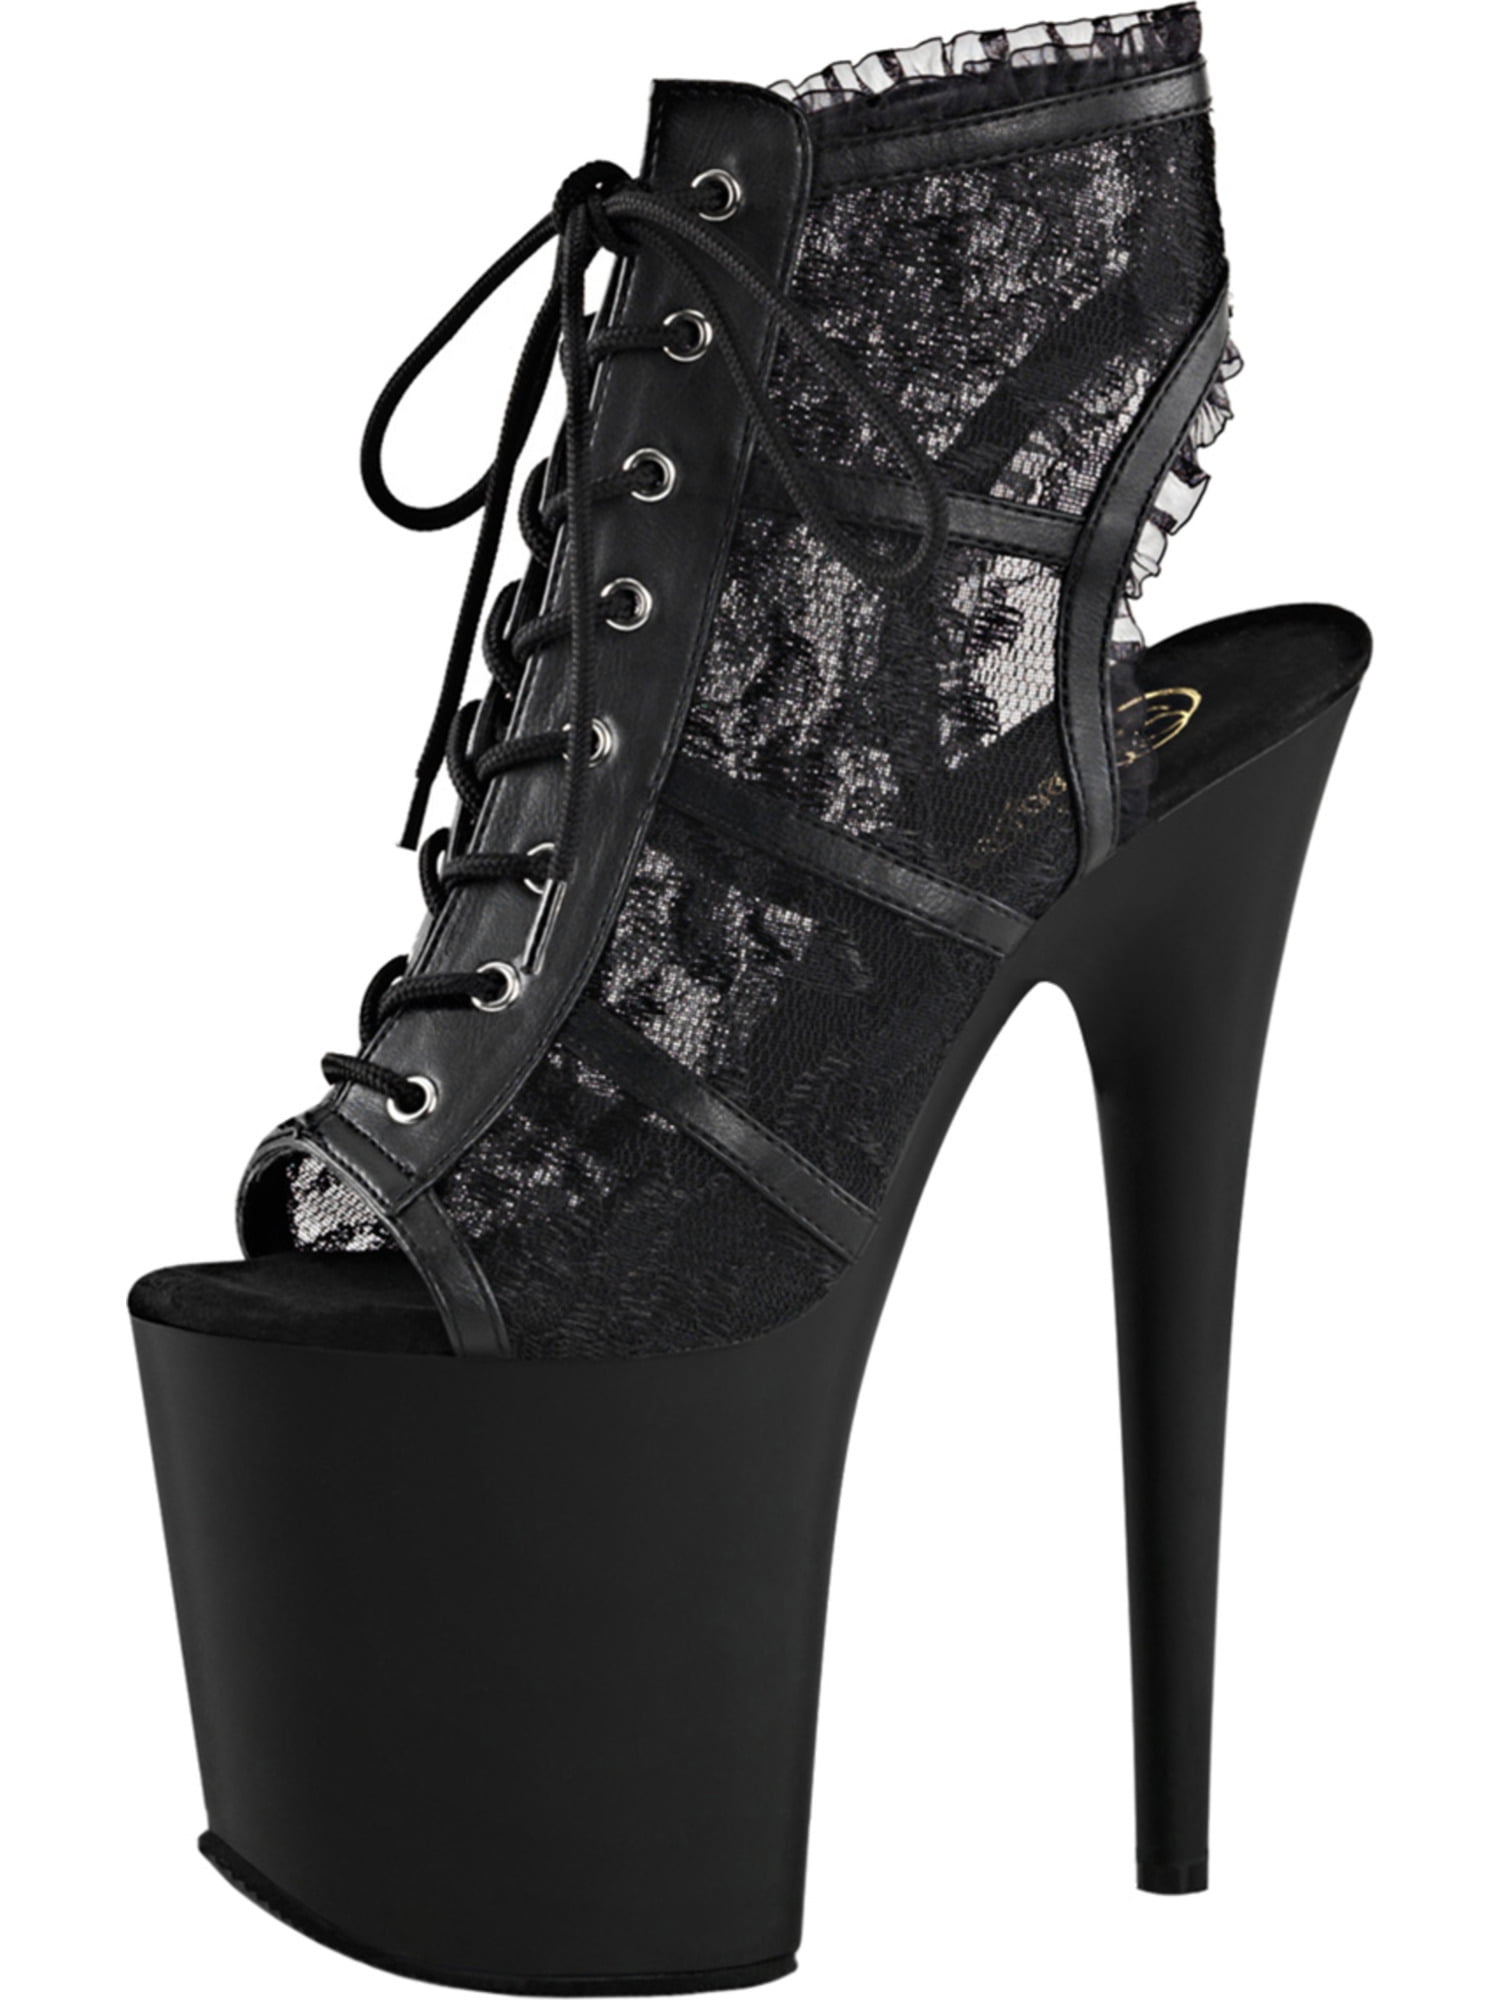 black lace heels open toe